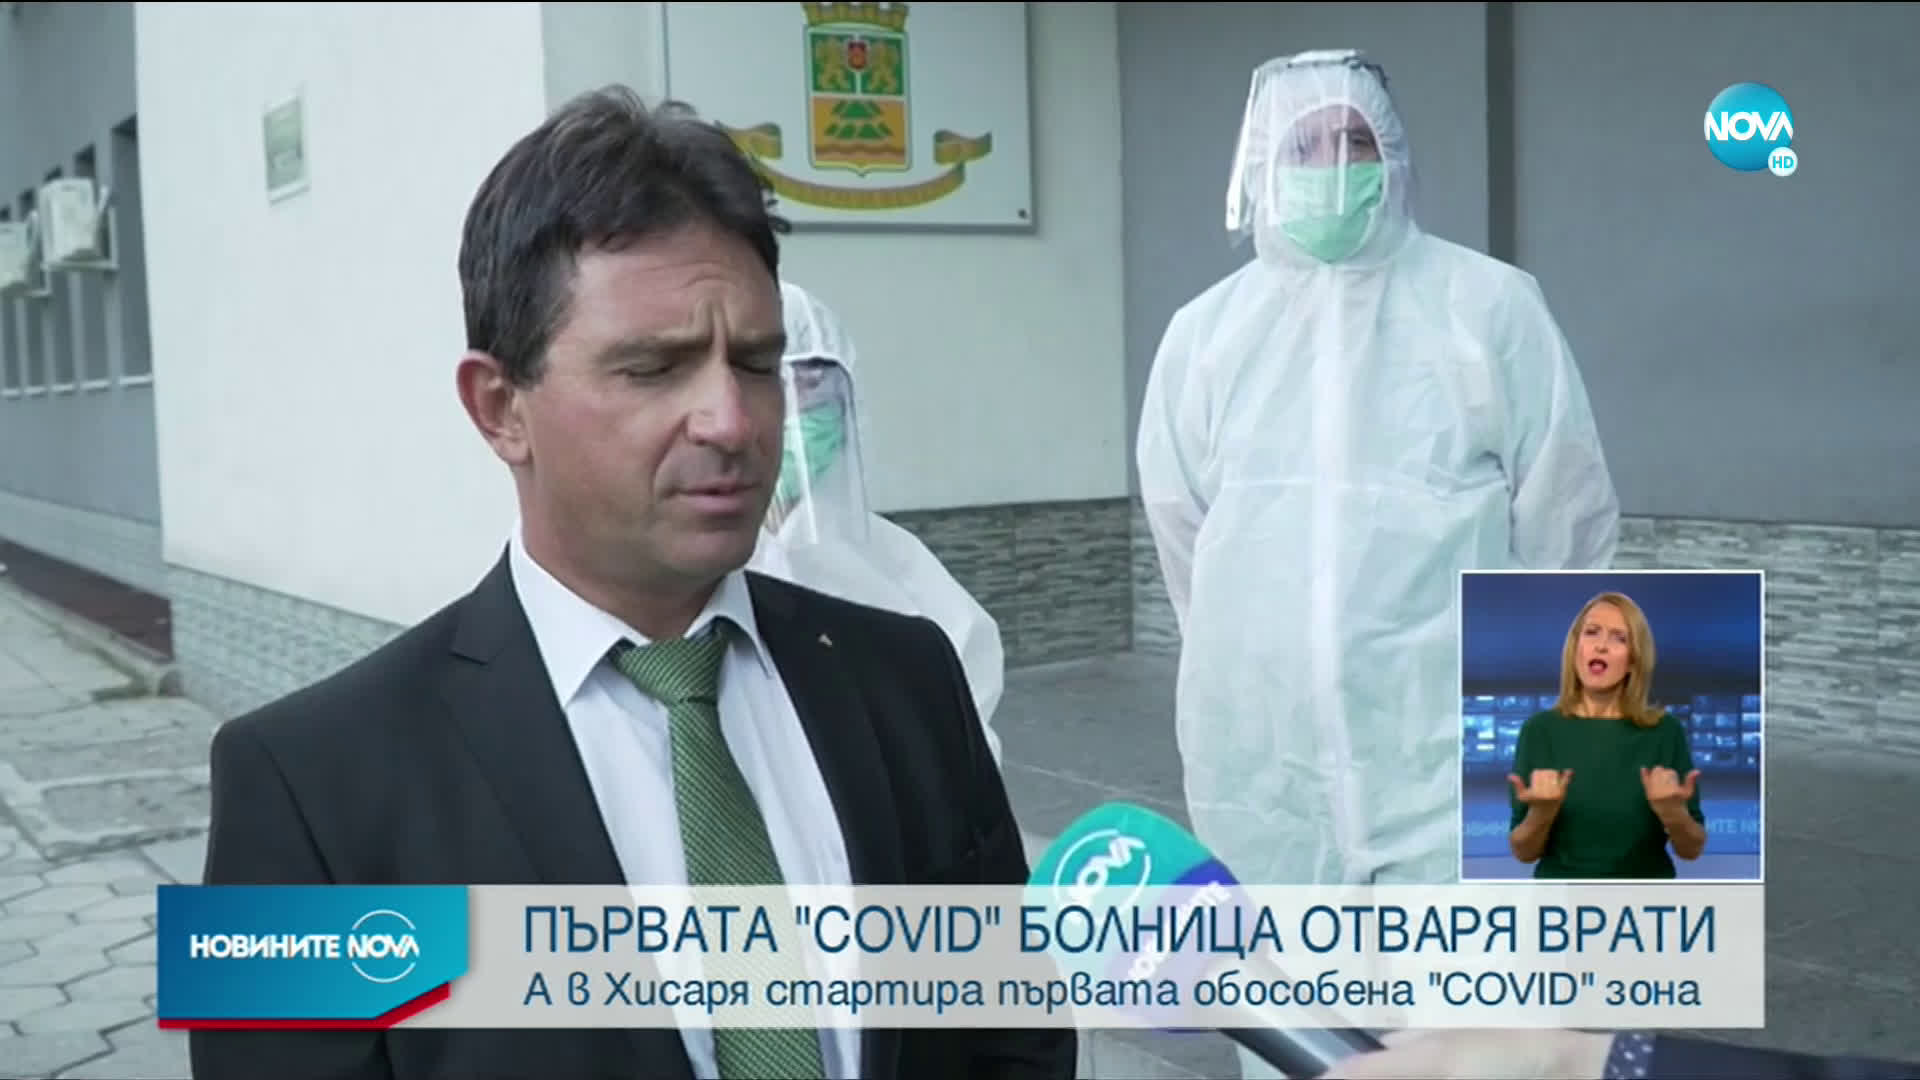 В Пловдив започва работа първата COVID-болница